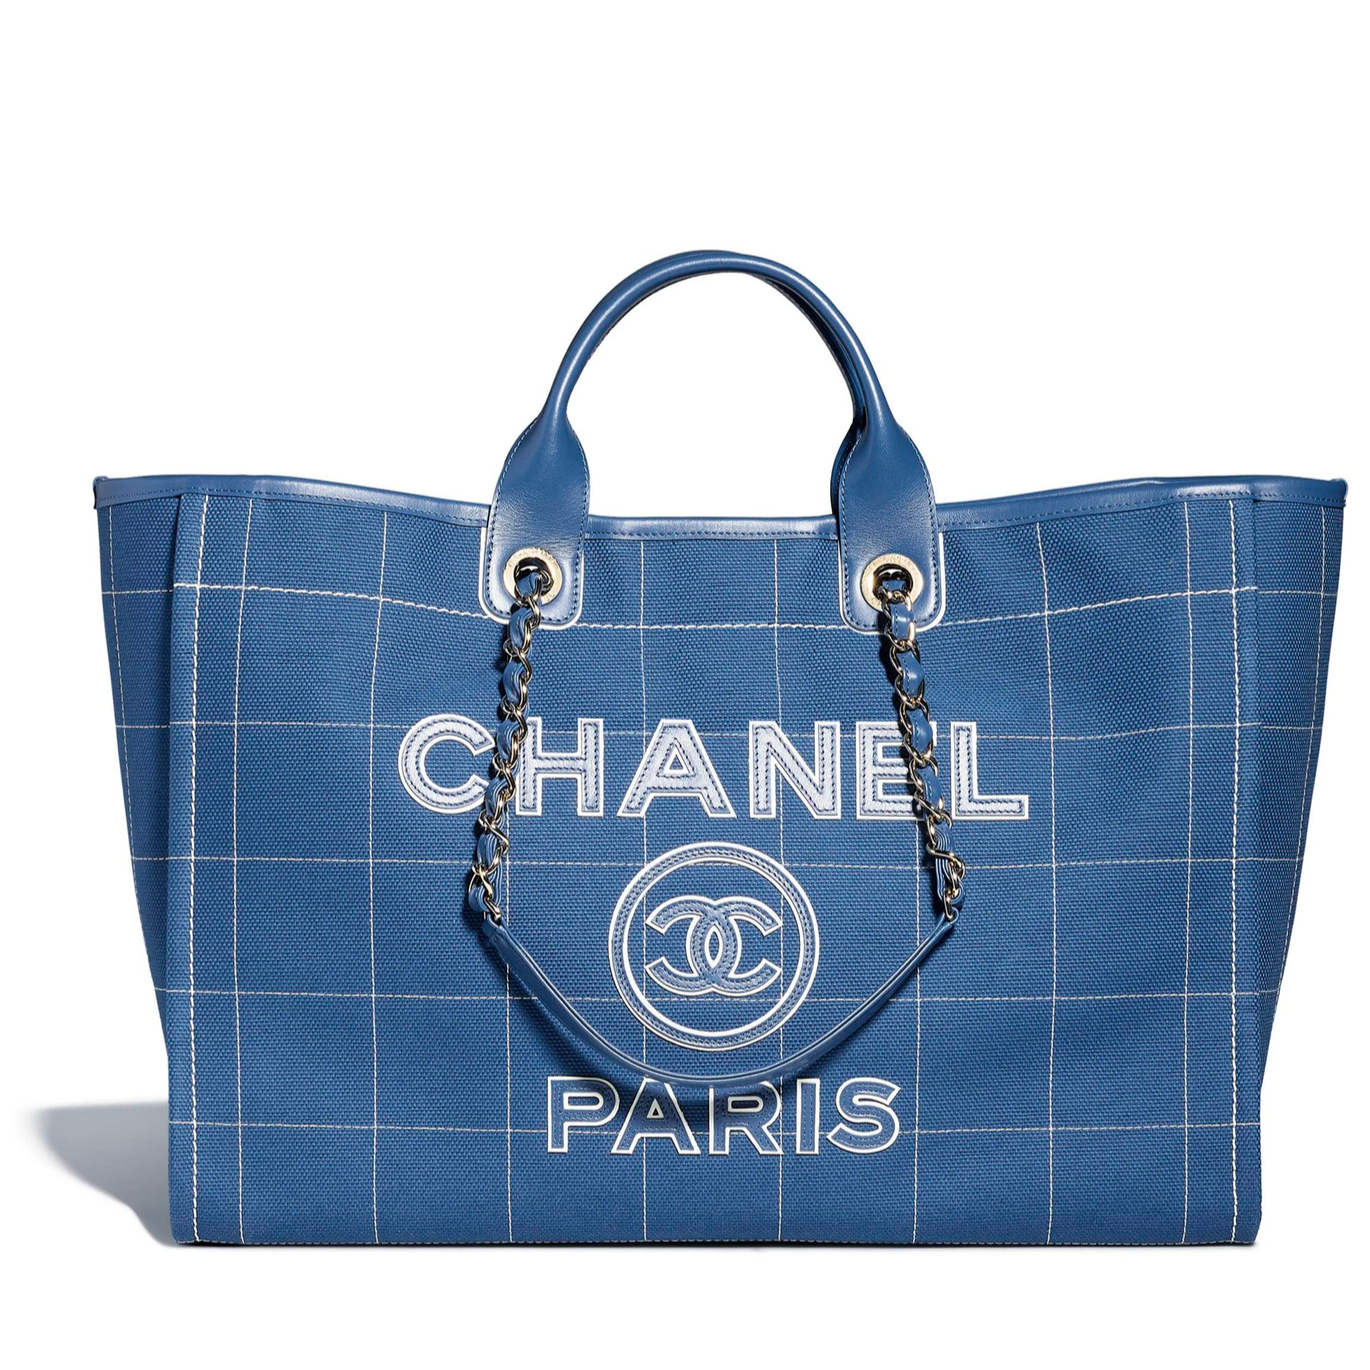 Bảng giá túi xách Chanel theo mùa mới nhất Chanel Cruise 2019  websosanhvn